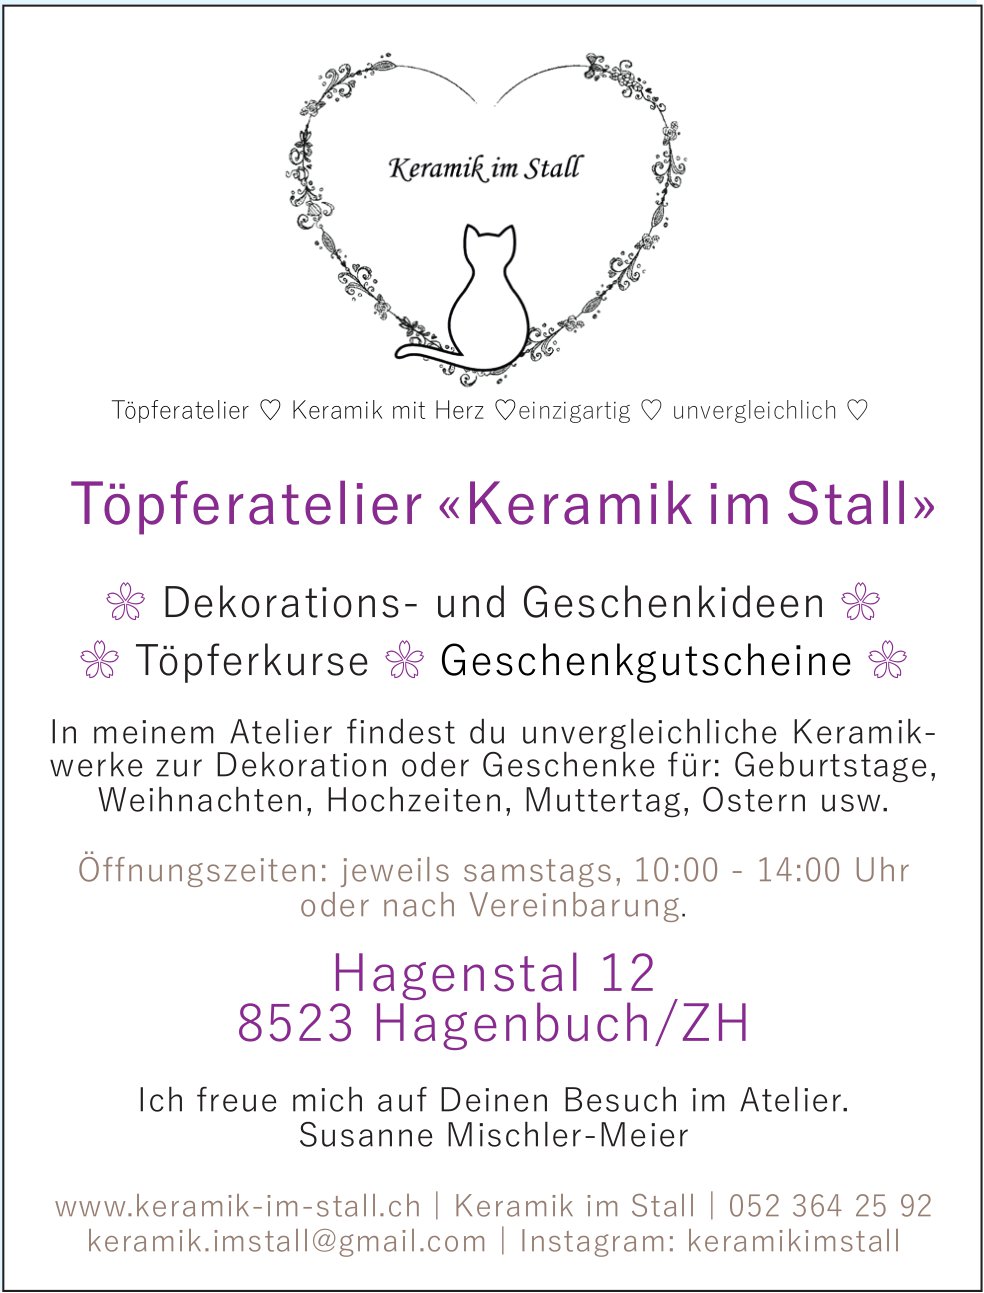 Töpferatelier «Keramik im Stall», Hagenbuch/ZH - Dekorations- und Geschenkideen, Töpferkurse,  Geschenkgutscheine